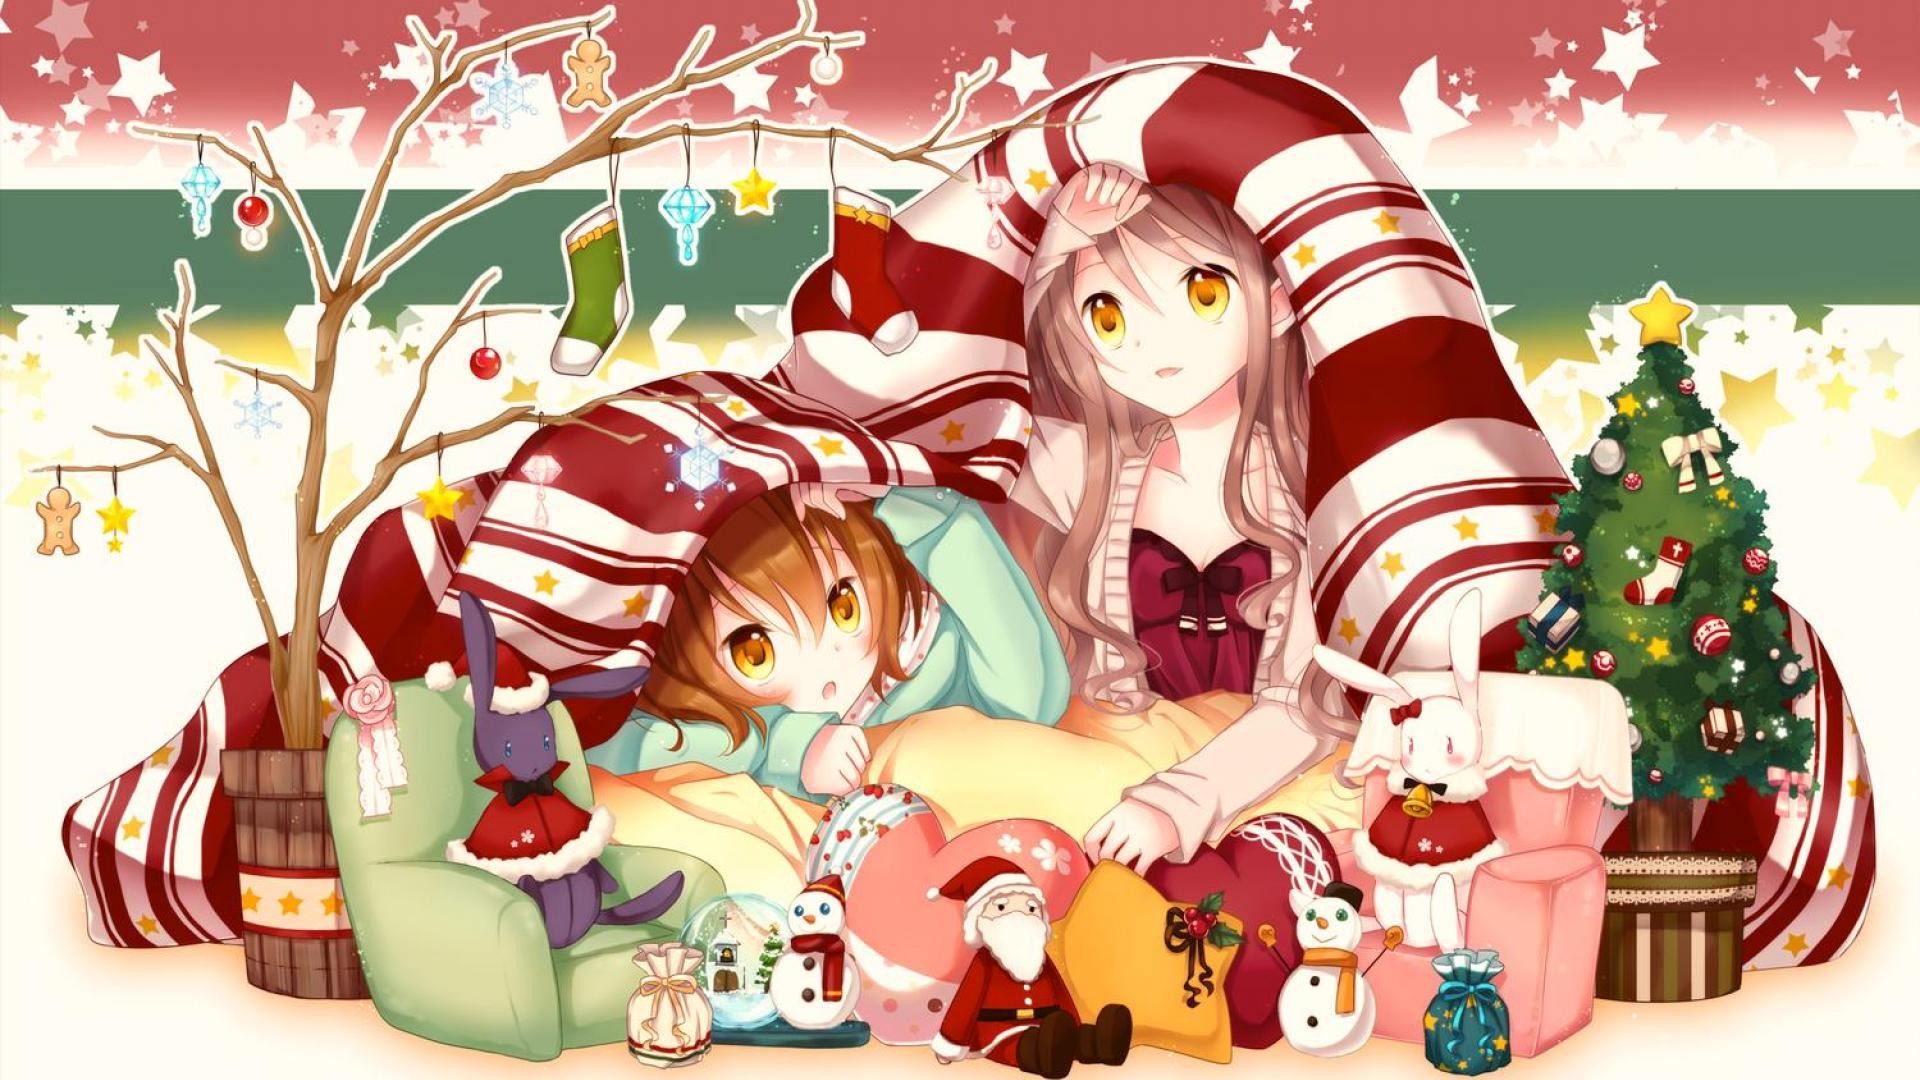 navidad anime wallpaper,dibujos animados,nochebuena,navidad,ilustración,personaje de ficción